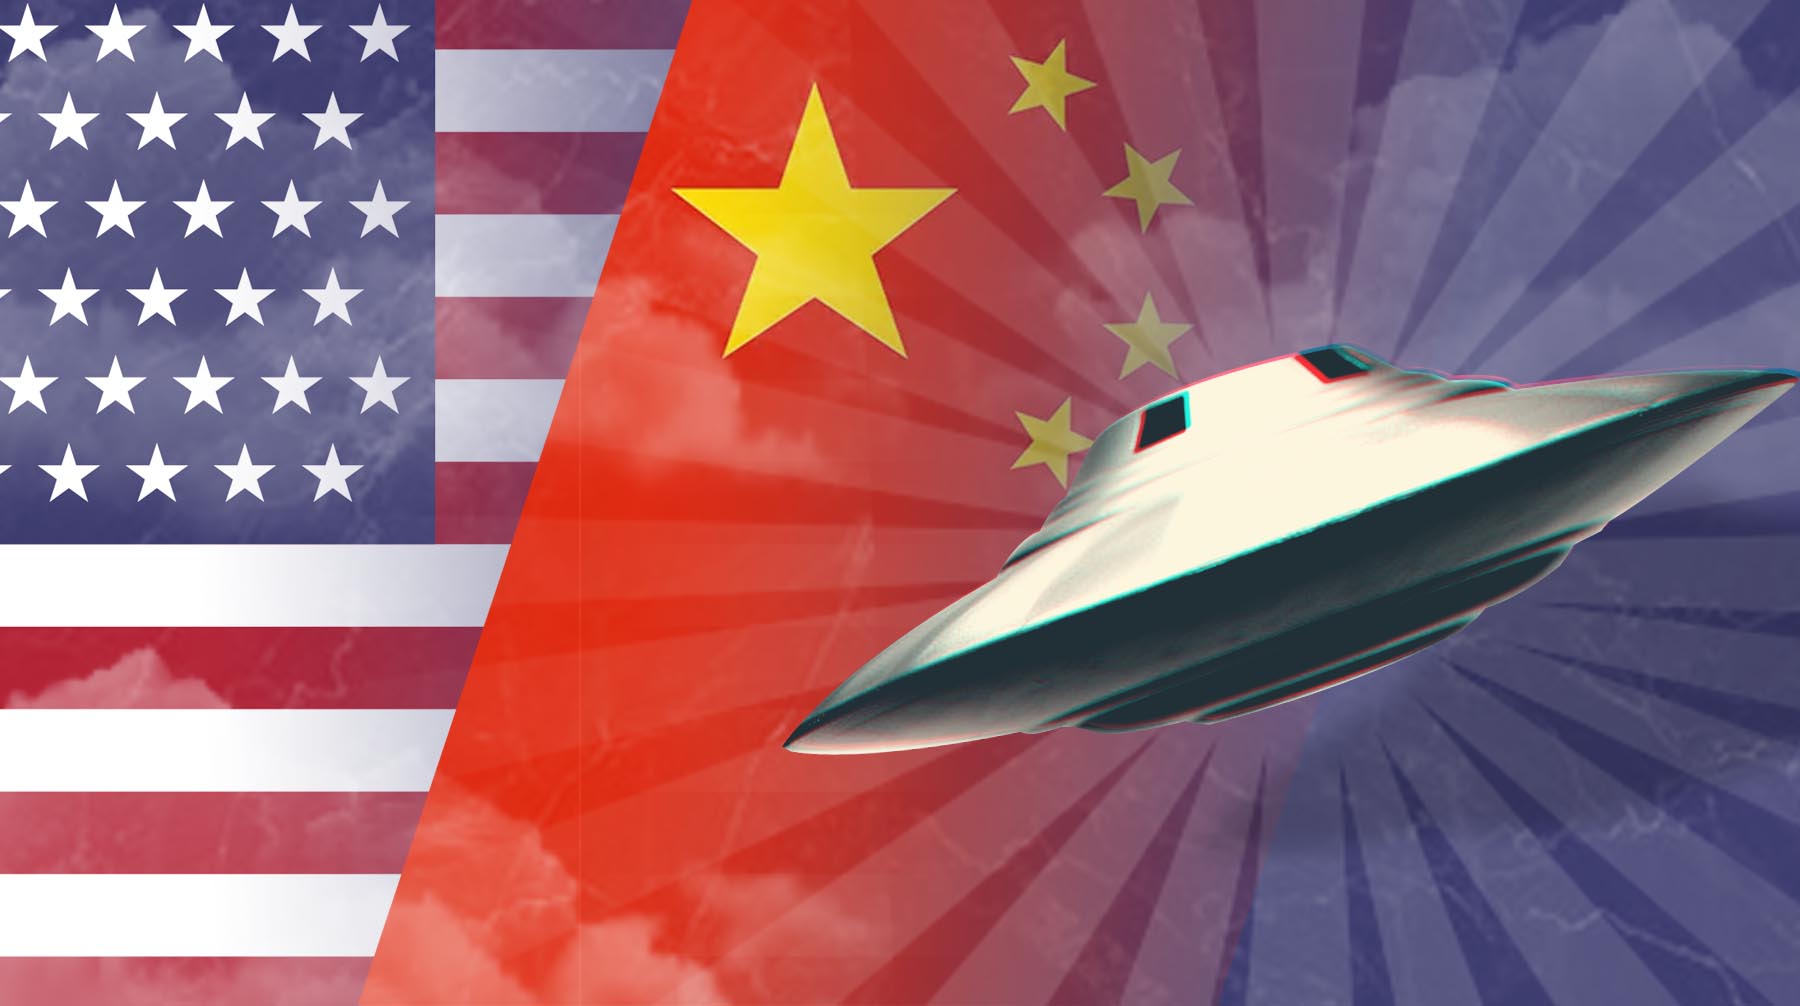 НЛО над США и Китаем. Могут ли сообщения о сбитых зондах быть предвестником войны за Тайвань?